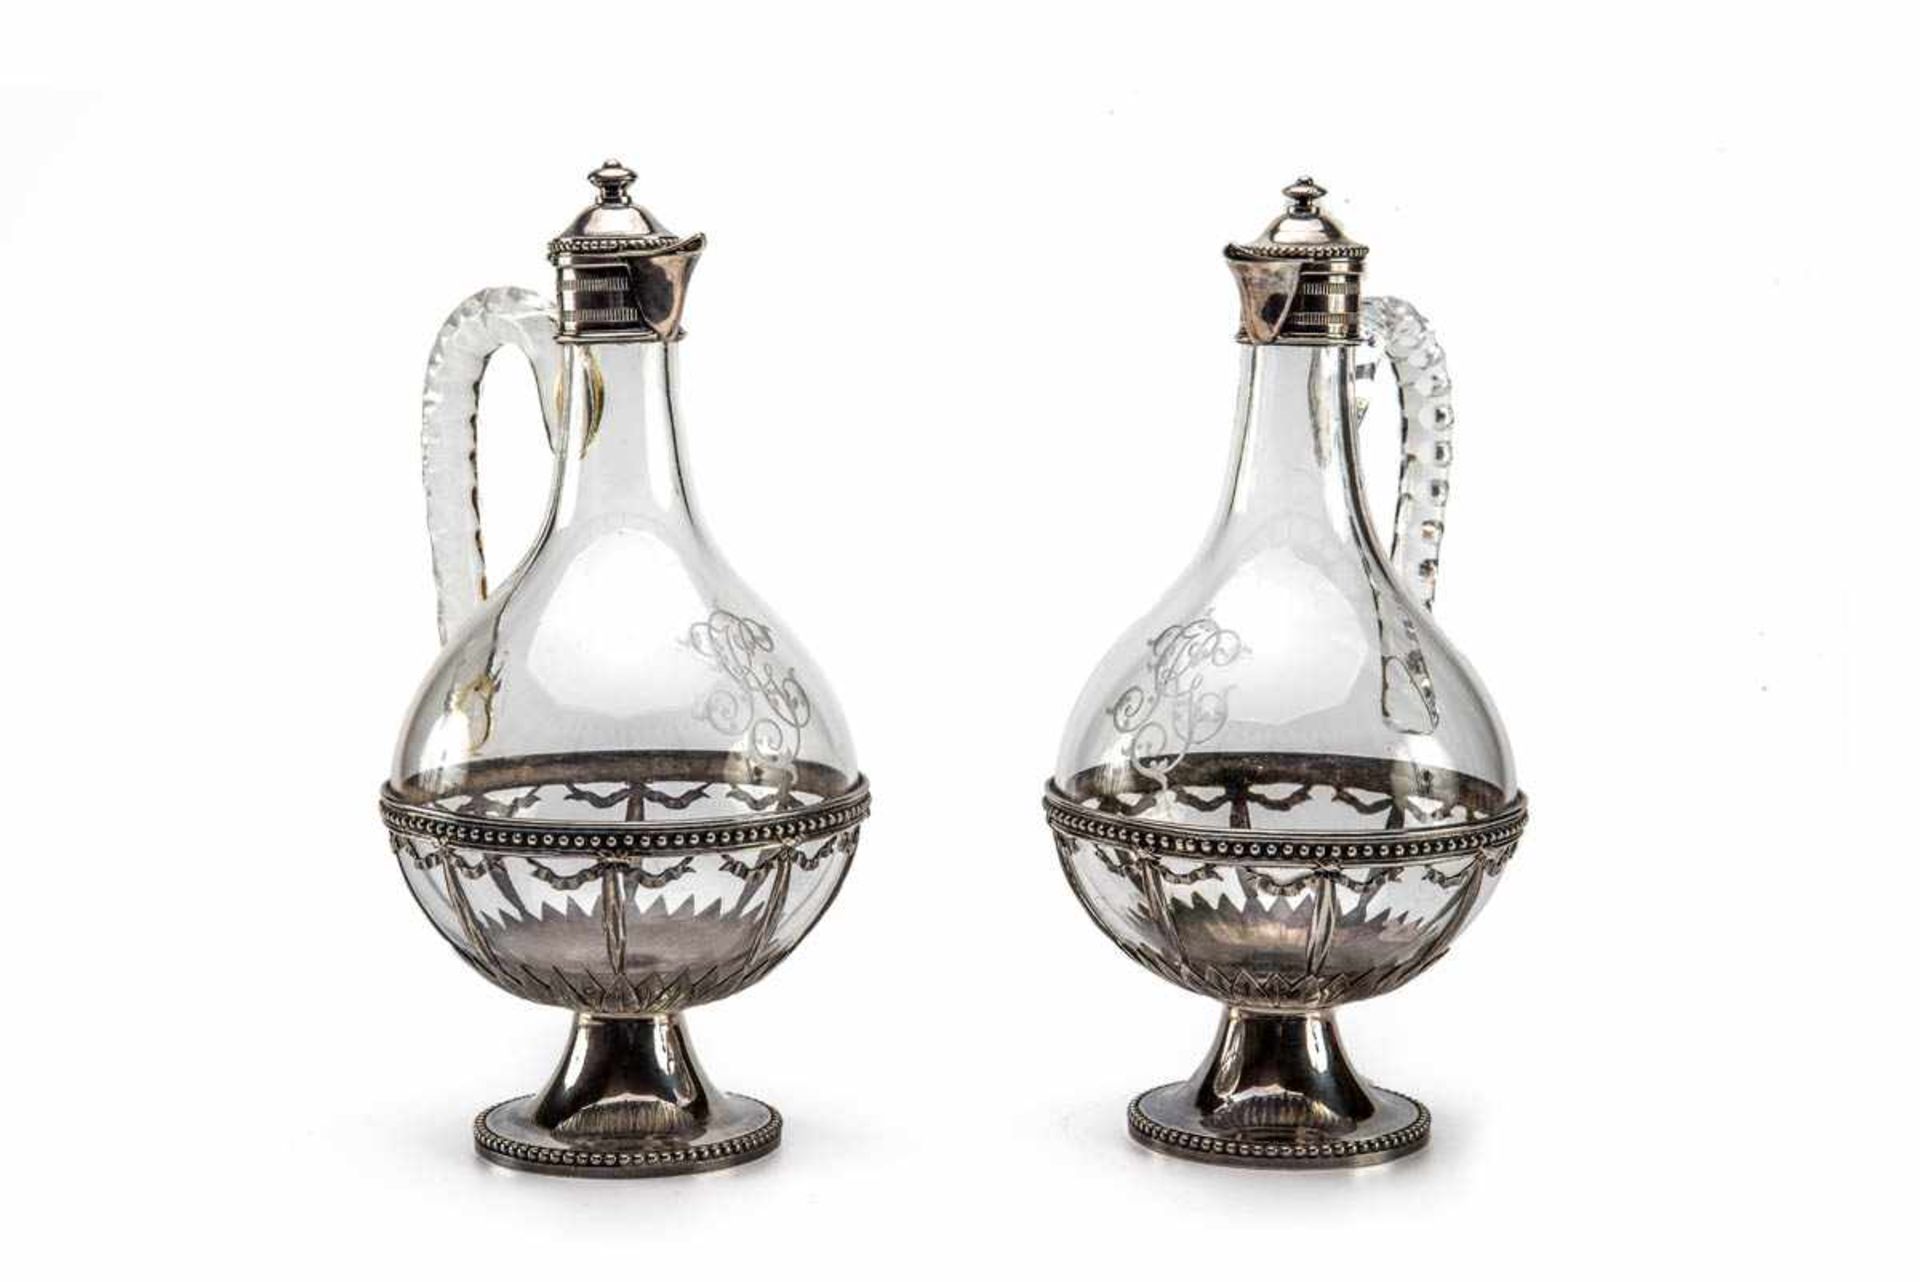 Paar Karaffen, Charles Odiot, Paris 1826-1894 950er Silber, farbloses glas. Runder Fuß mit